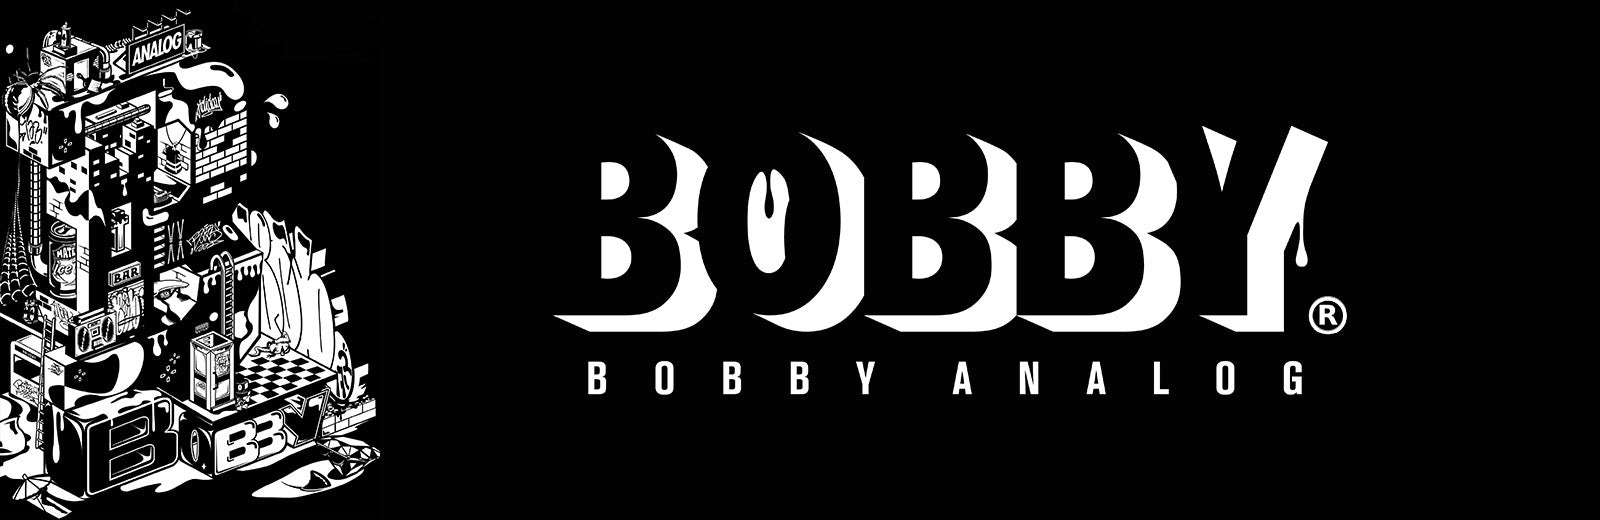 Bobby Analog